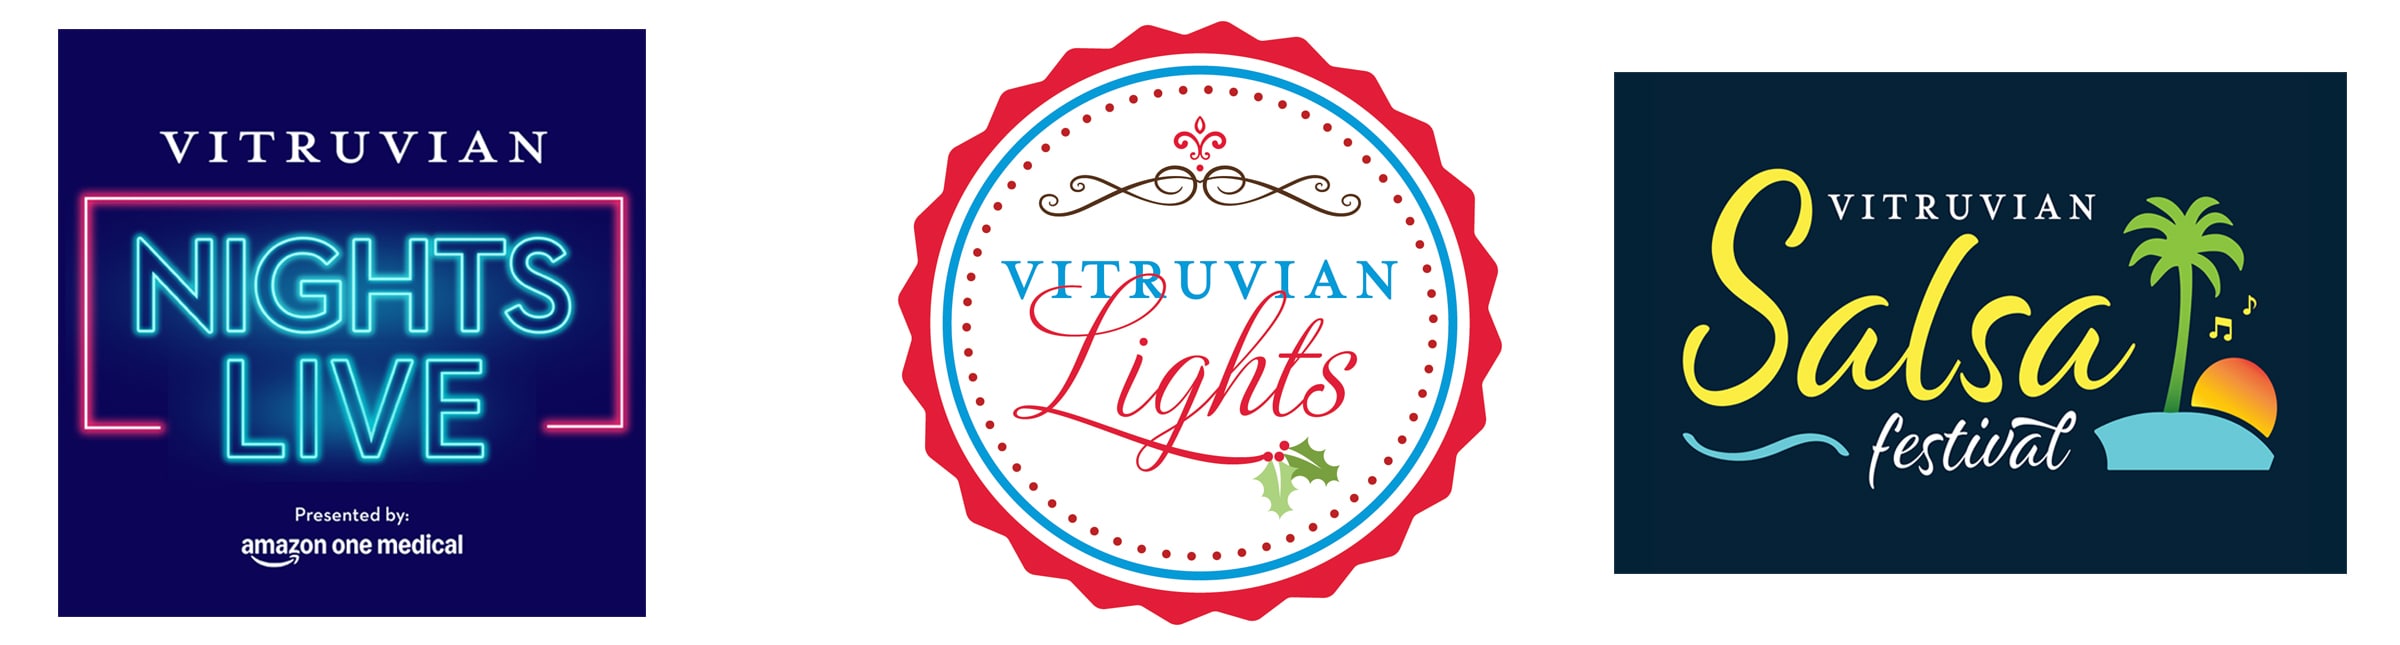 Vitruvian Lights - Vitruvian Nights - Vitruvian Salsa Festival